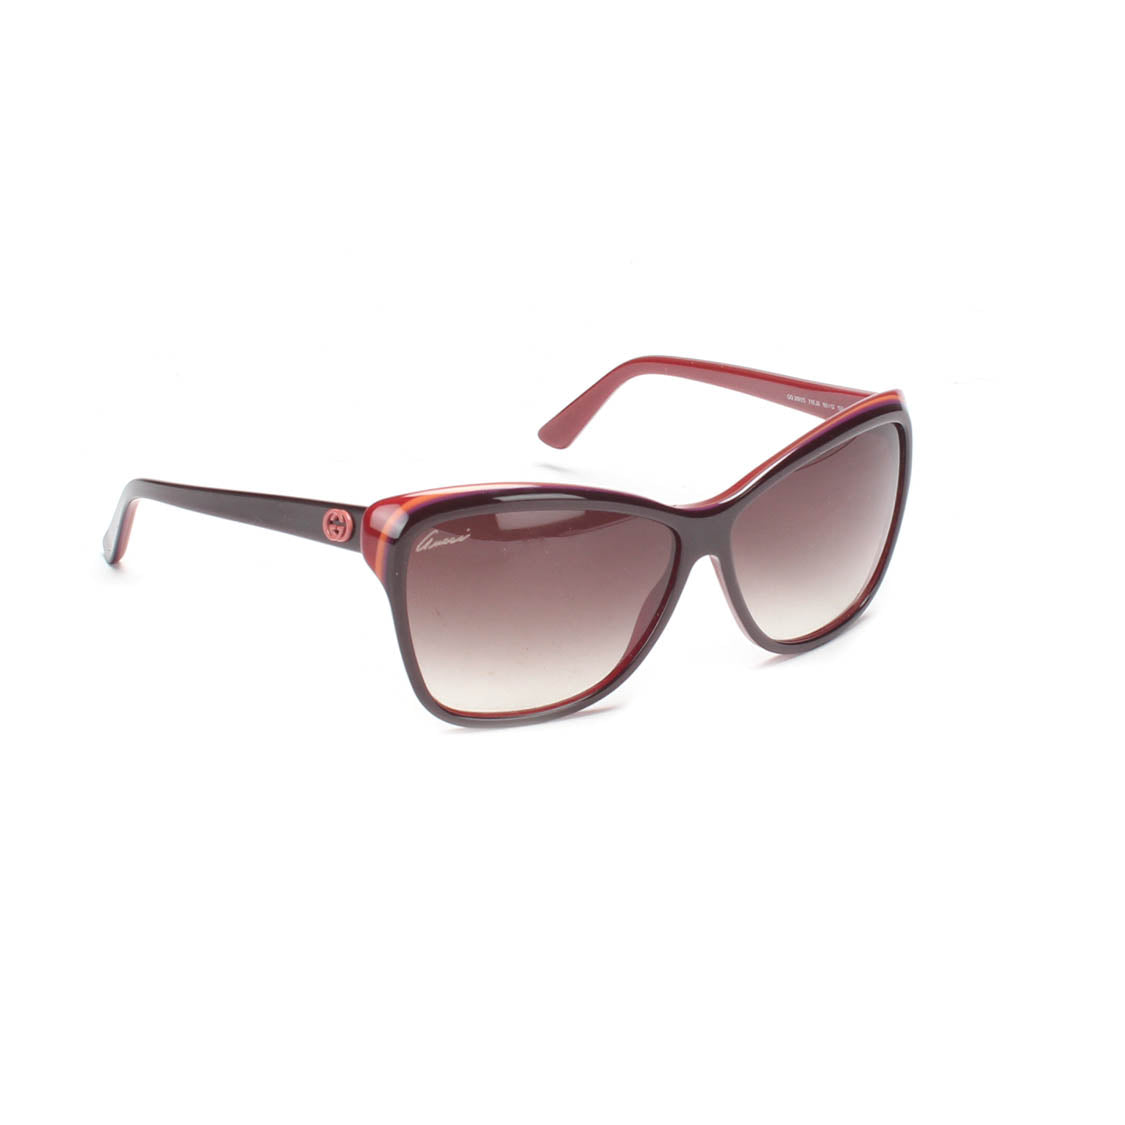 Interlocking G Cat-Eye Sunglasses 3191/S